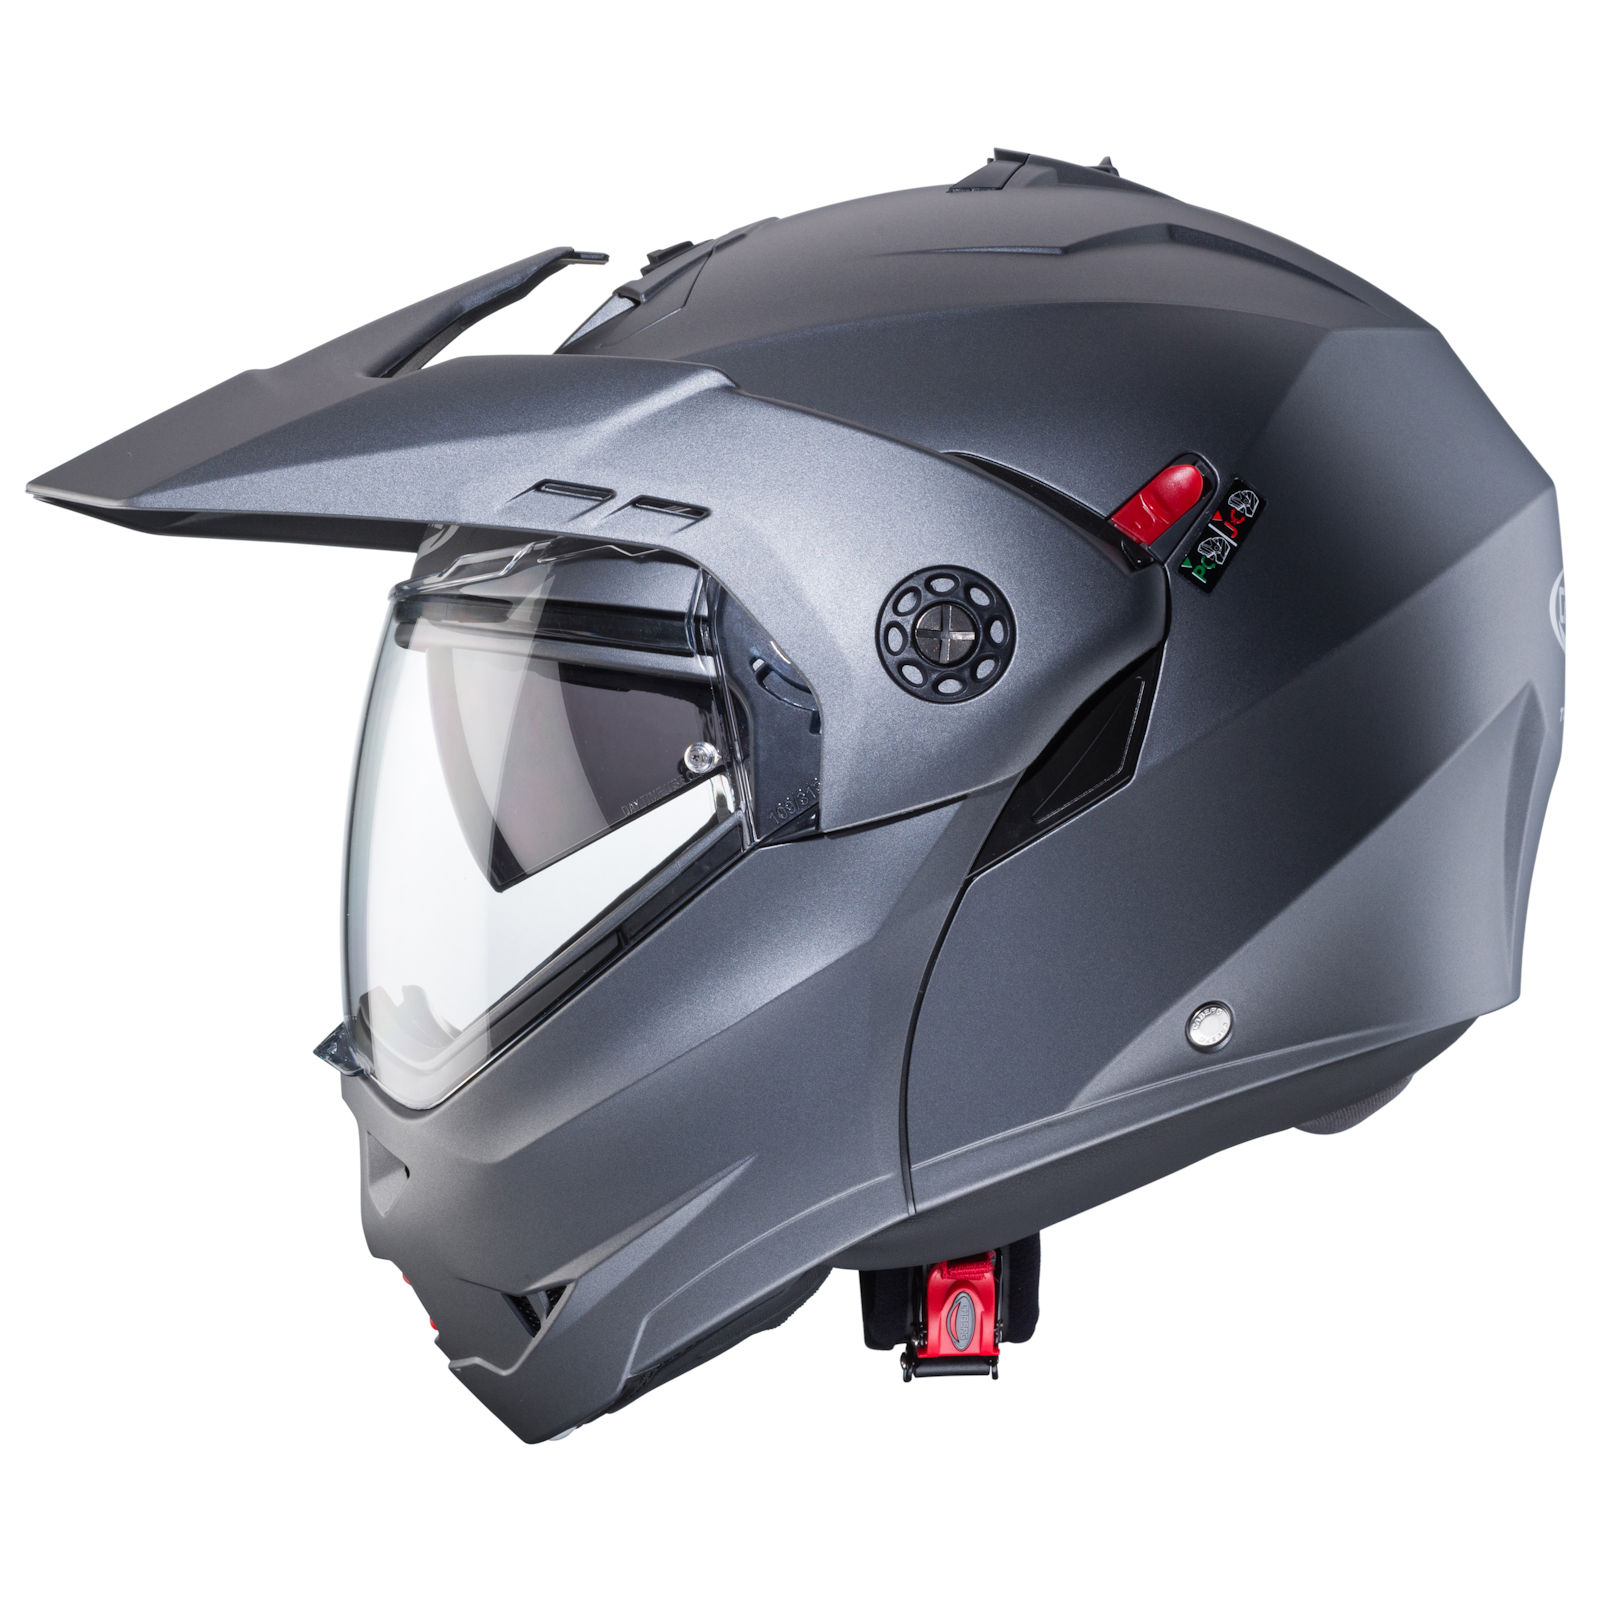 GERMOT Zweirad-Zubehör Vertriebs GmbH - Caberg Helm Tourmax X matt